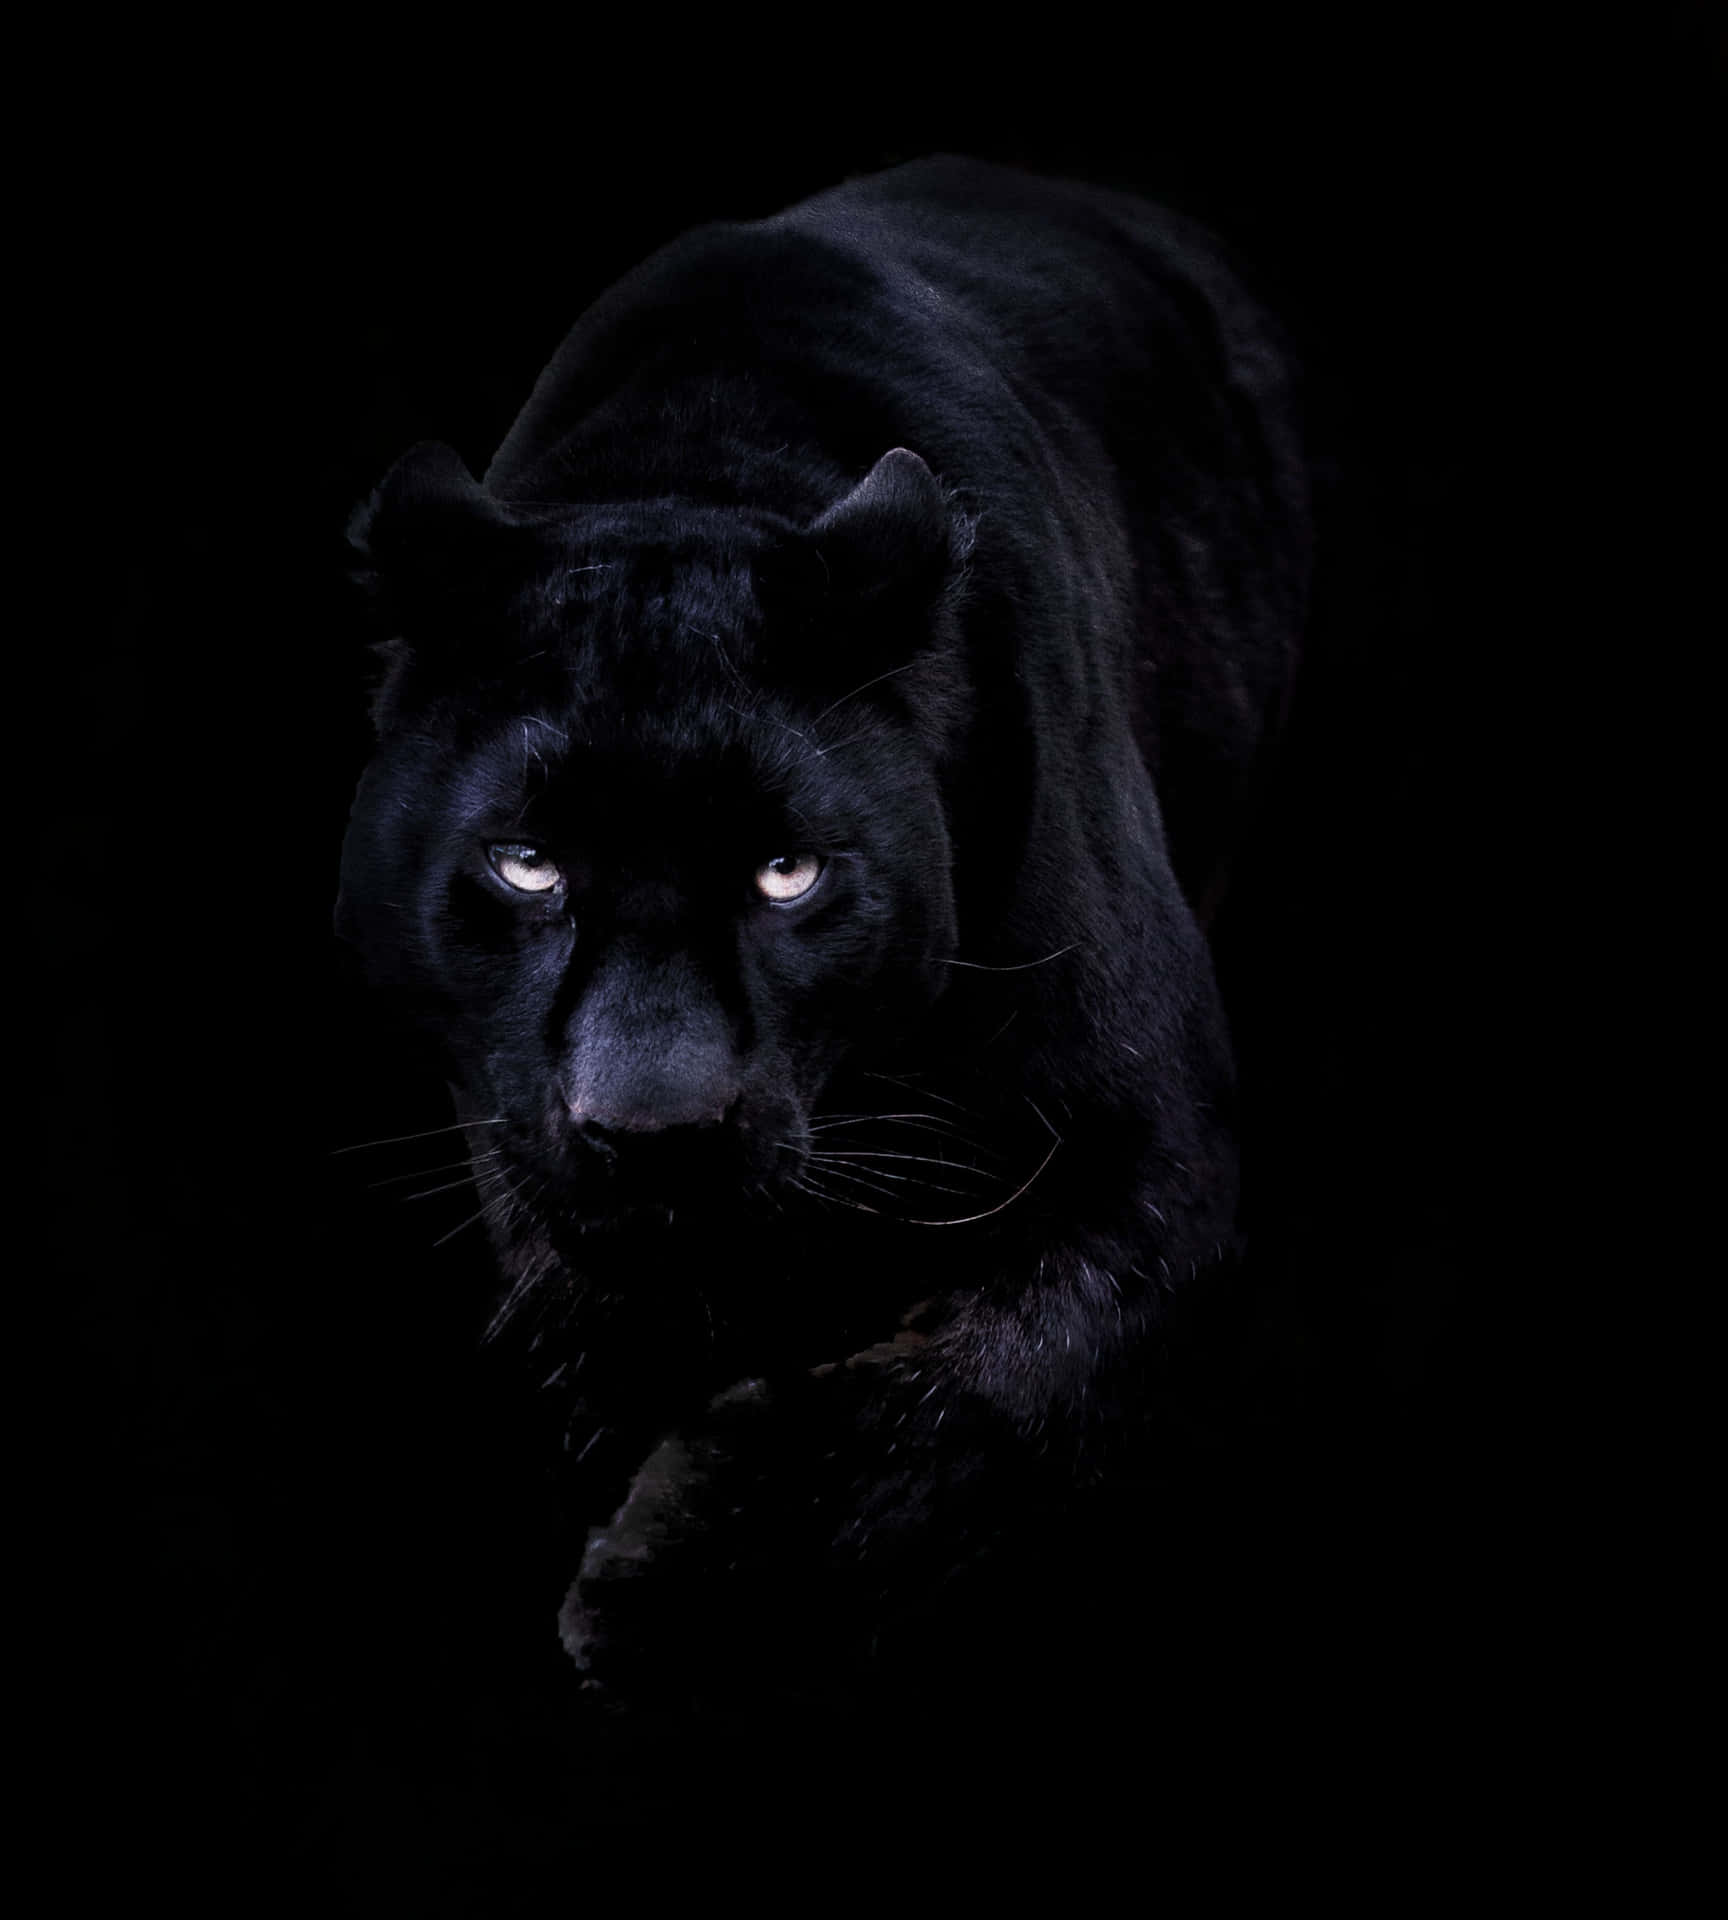 "Powerful&Stunning Cool Black Panther Animal" Wallpaper